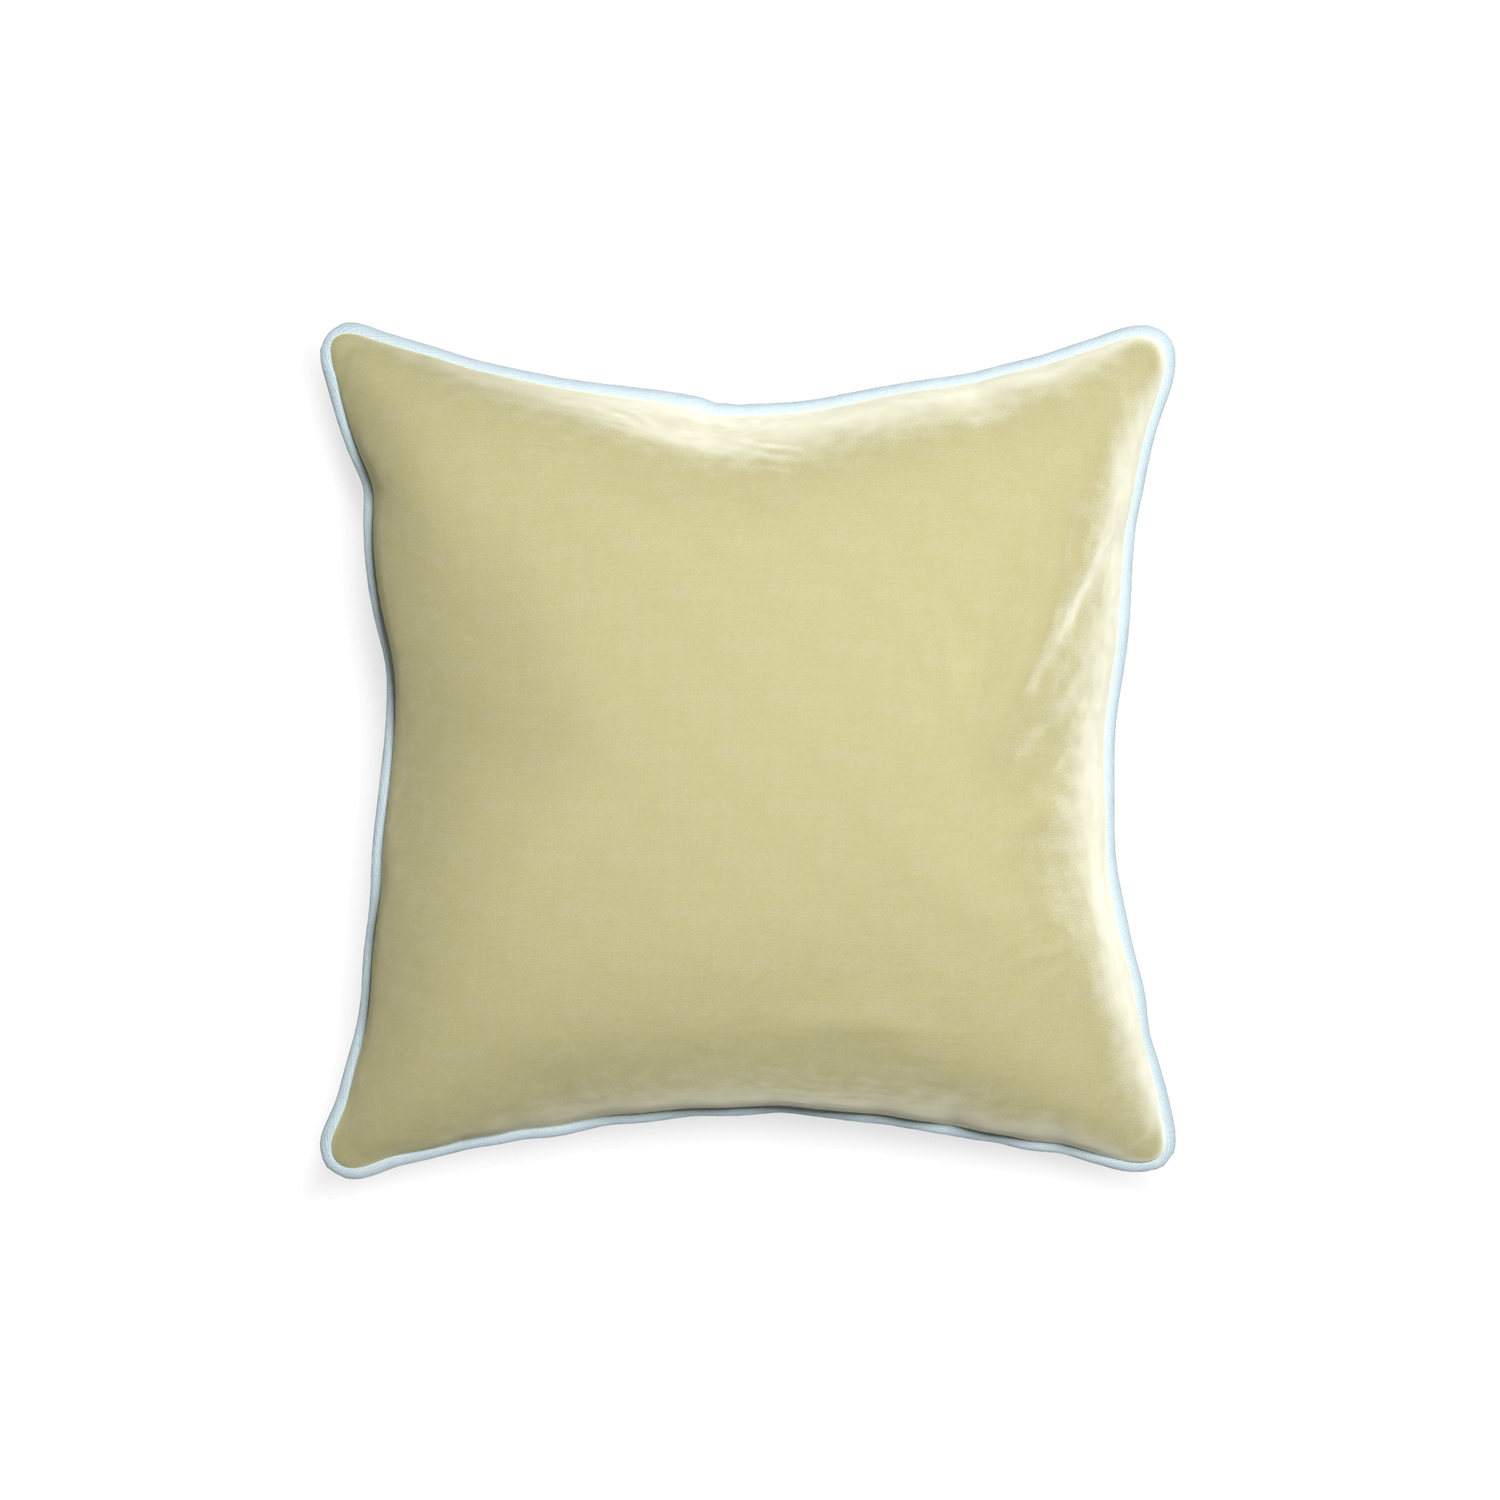 square light green velvet pillow with light blue piping